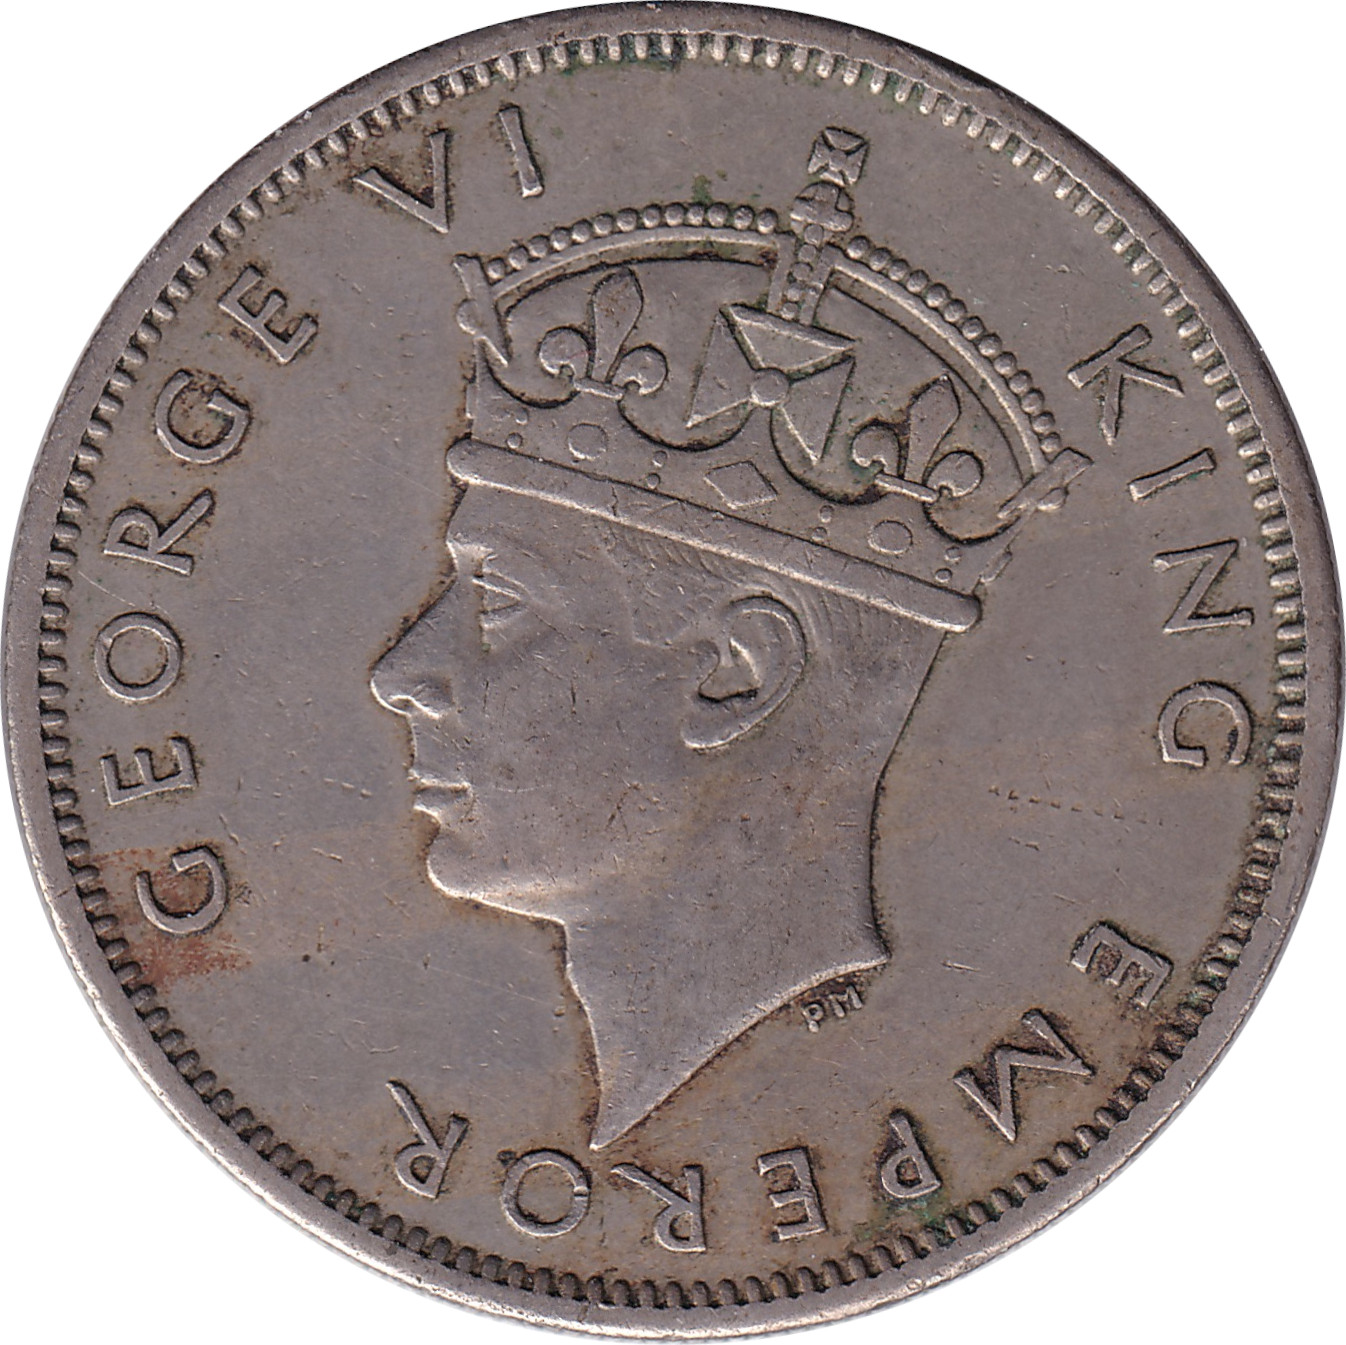 2 shillings - George VI - Petite tête